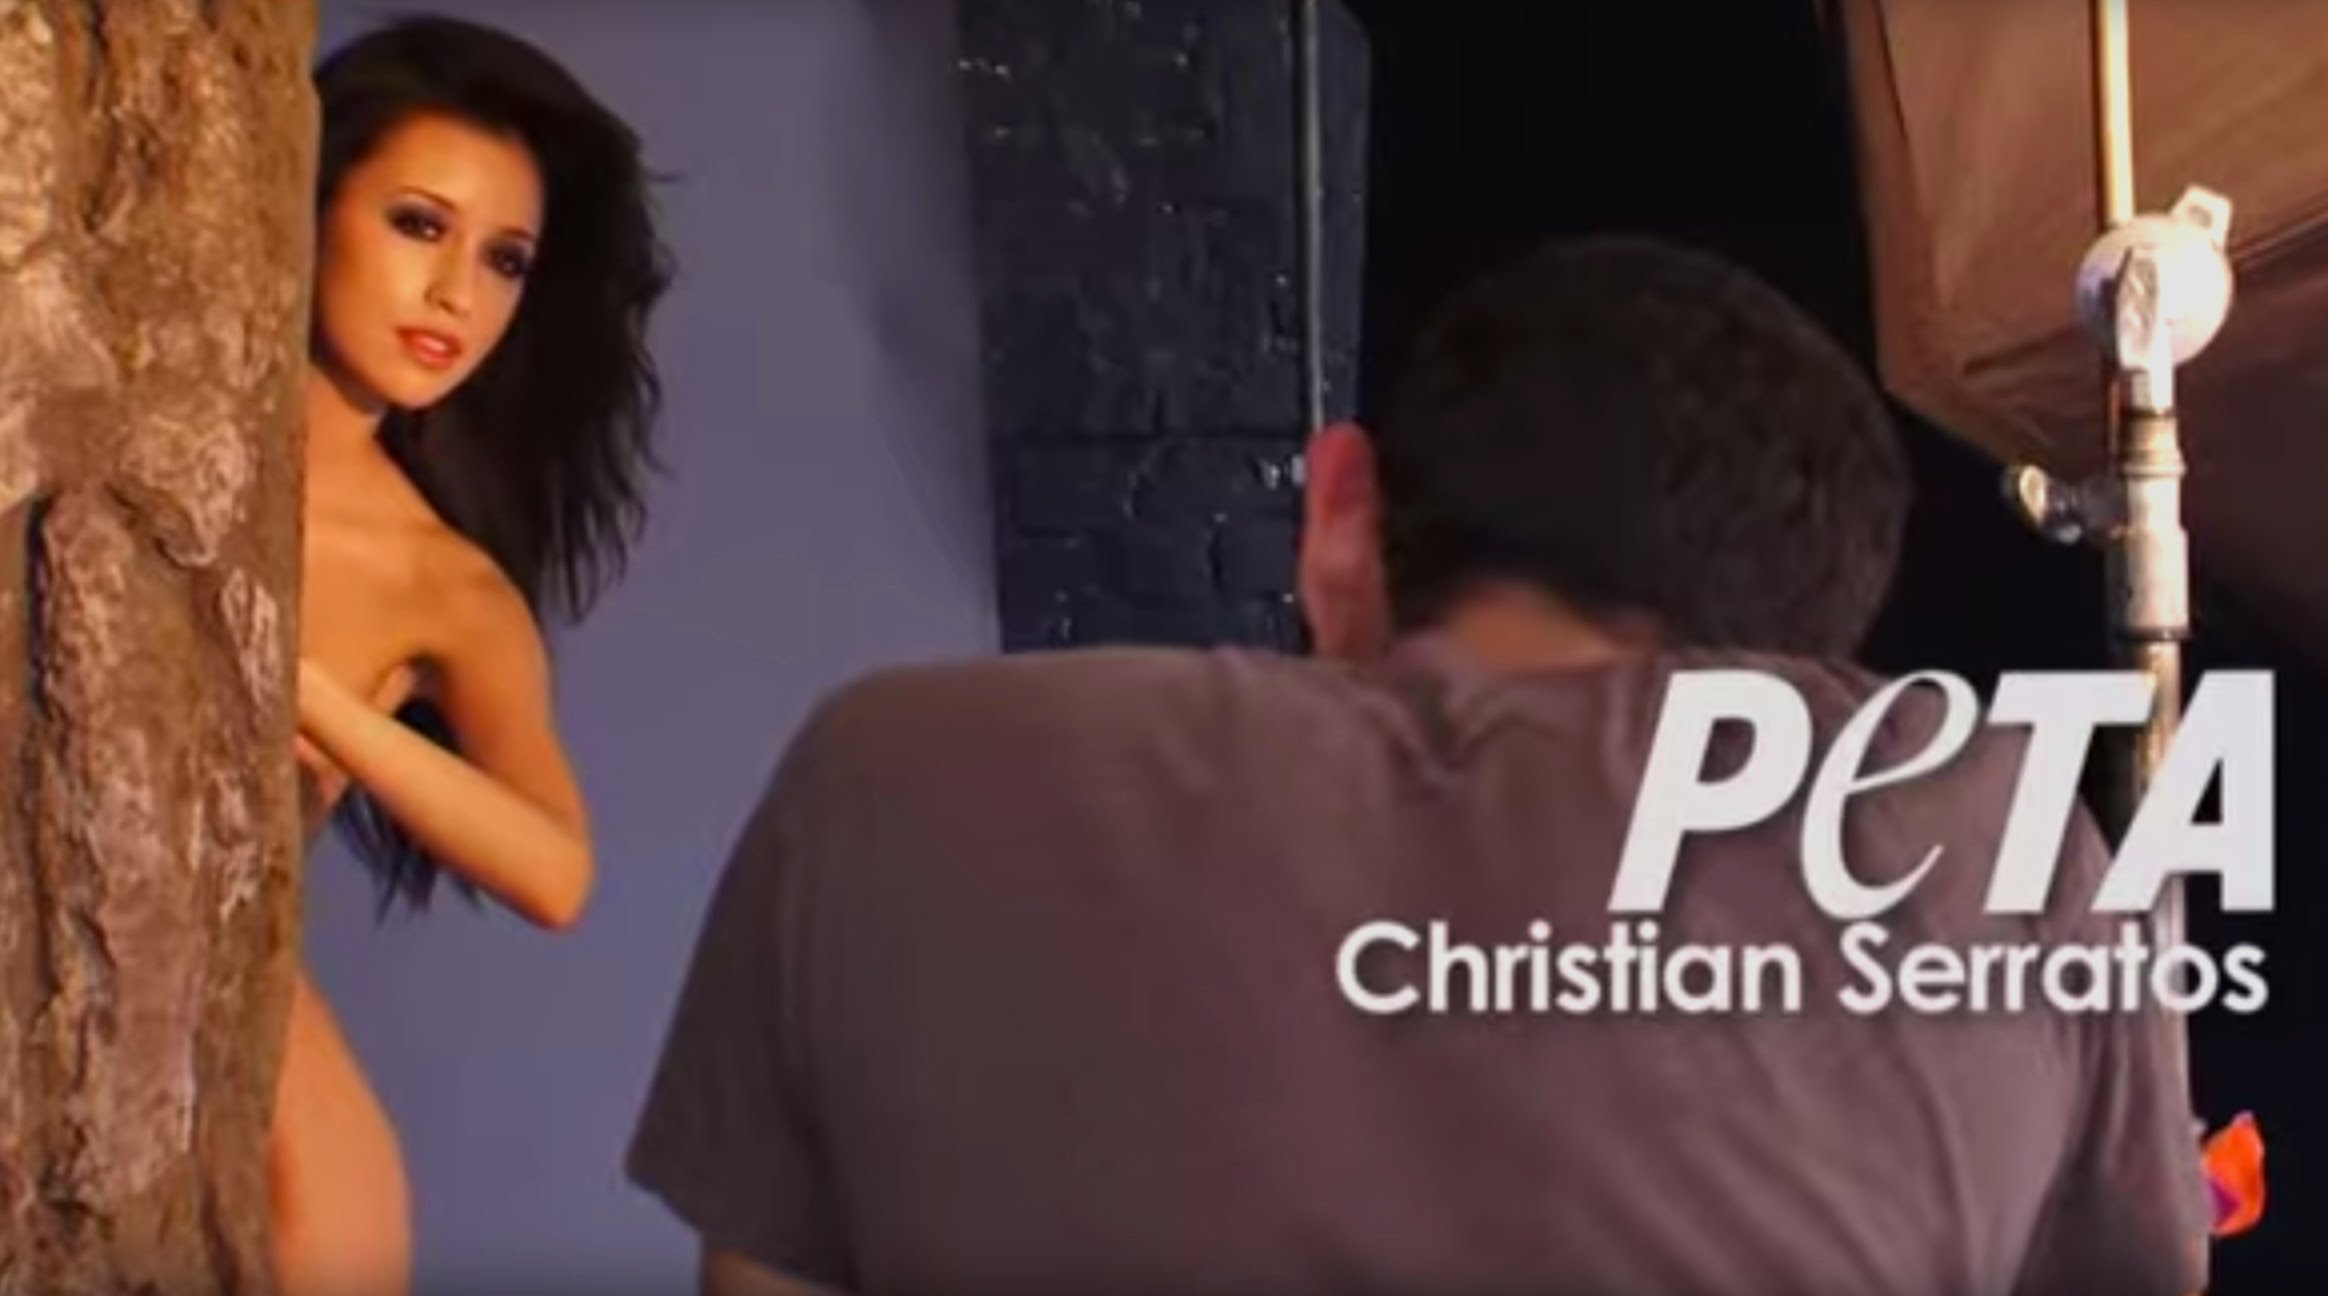 Christian serratos leaked nudes